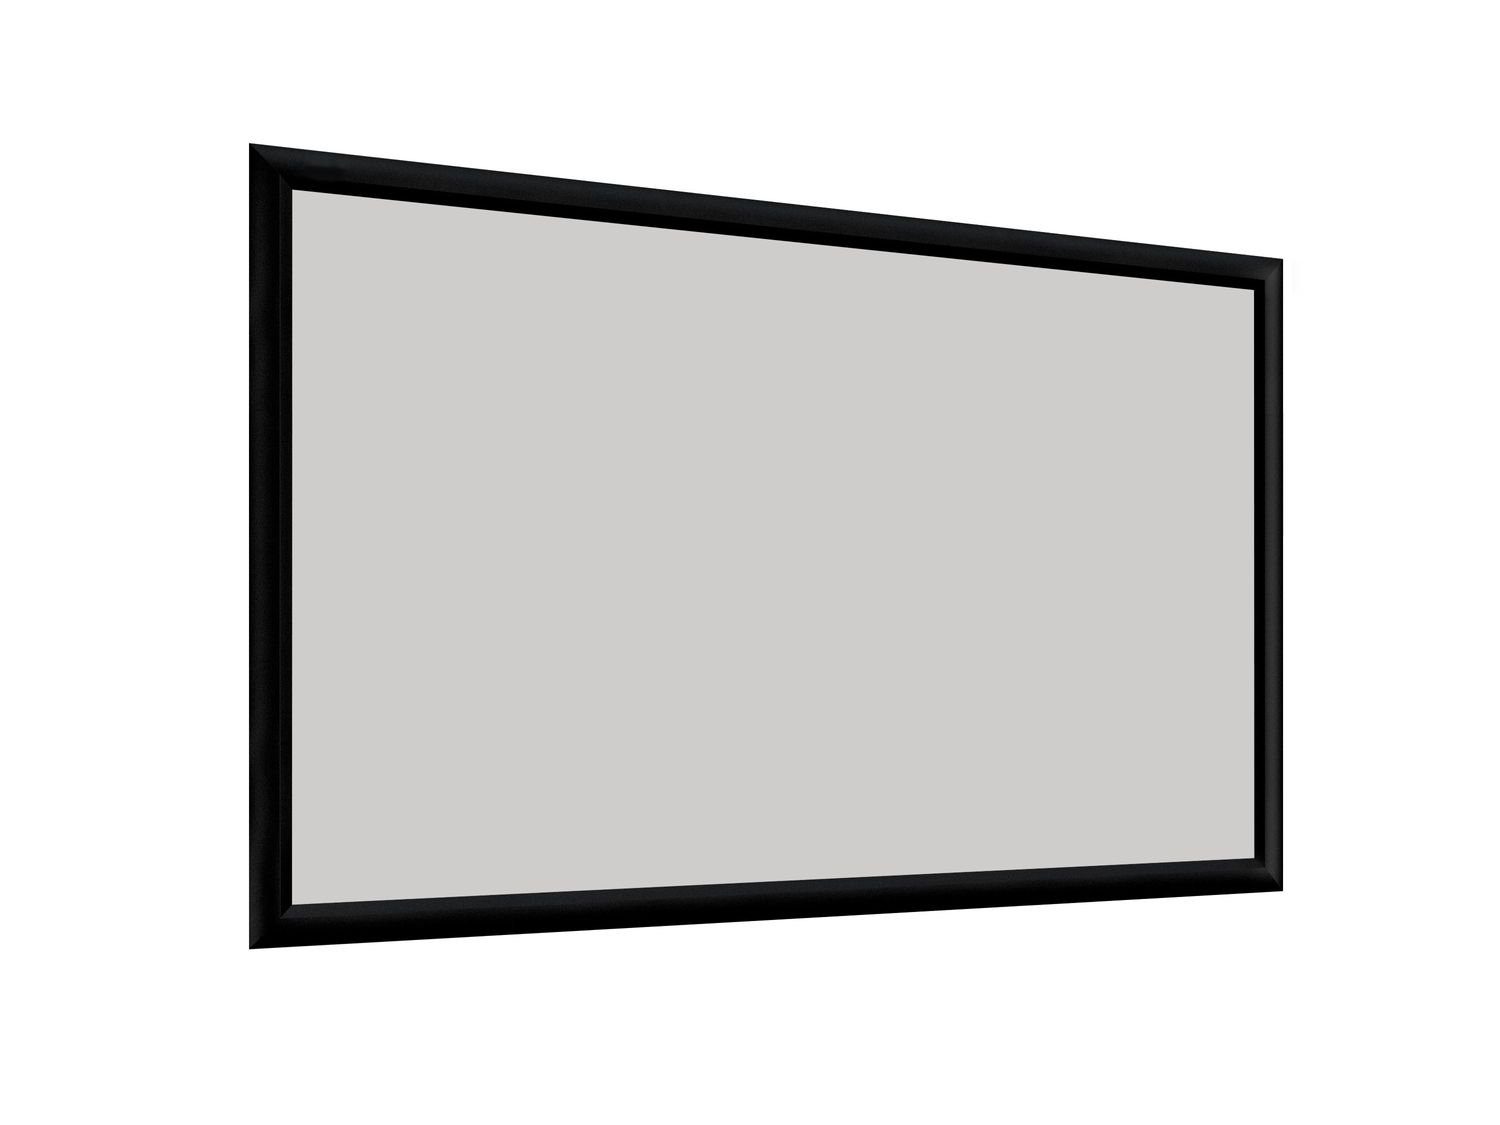 Deluxx Cinema - Dayvision ALR Rahmenleinwand (280 x 158cm, 16:9, Gain 1)